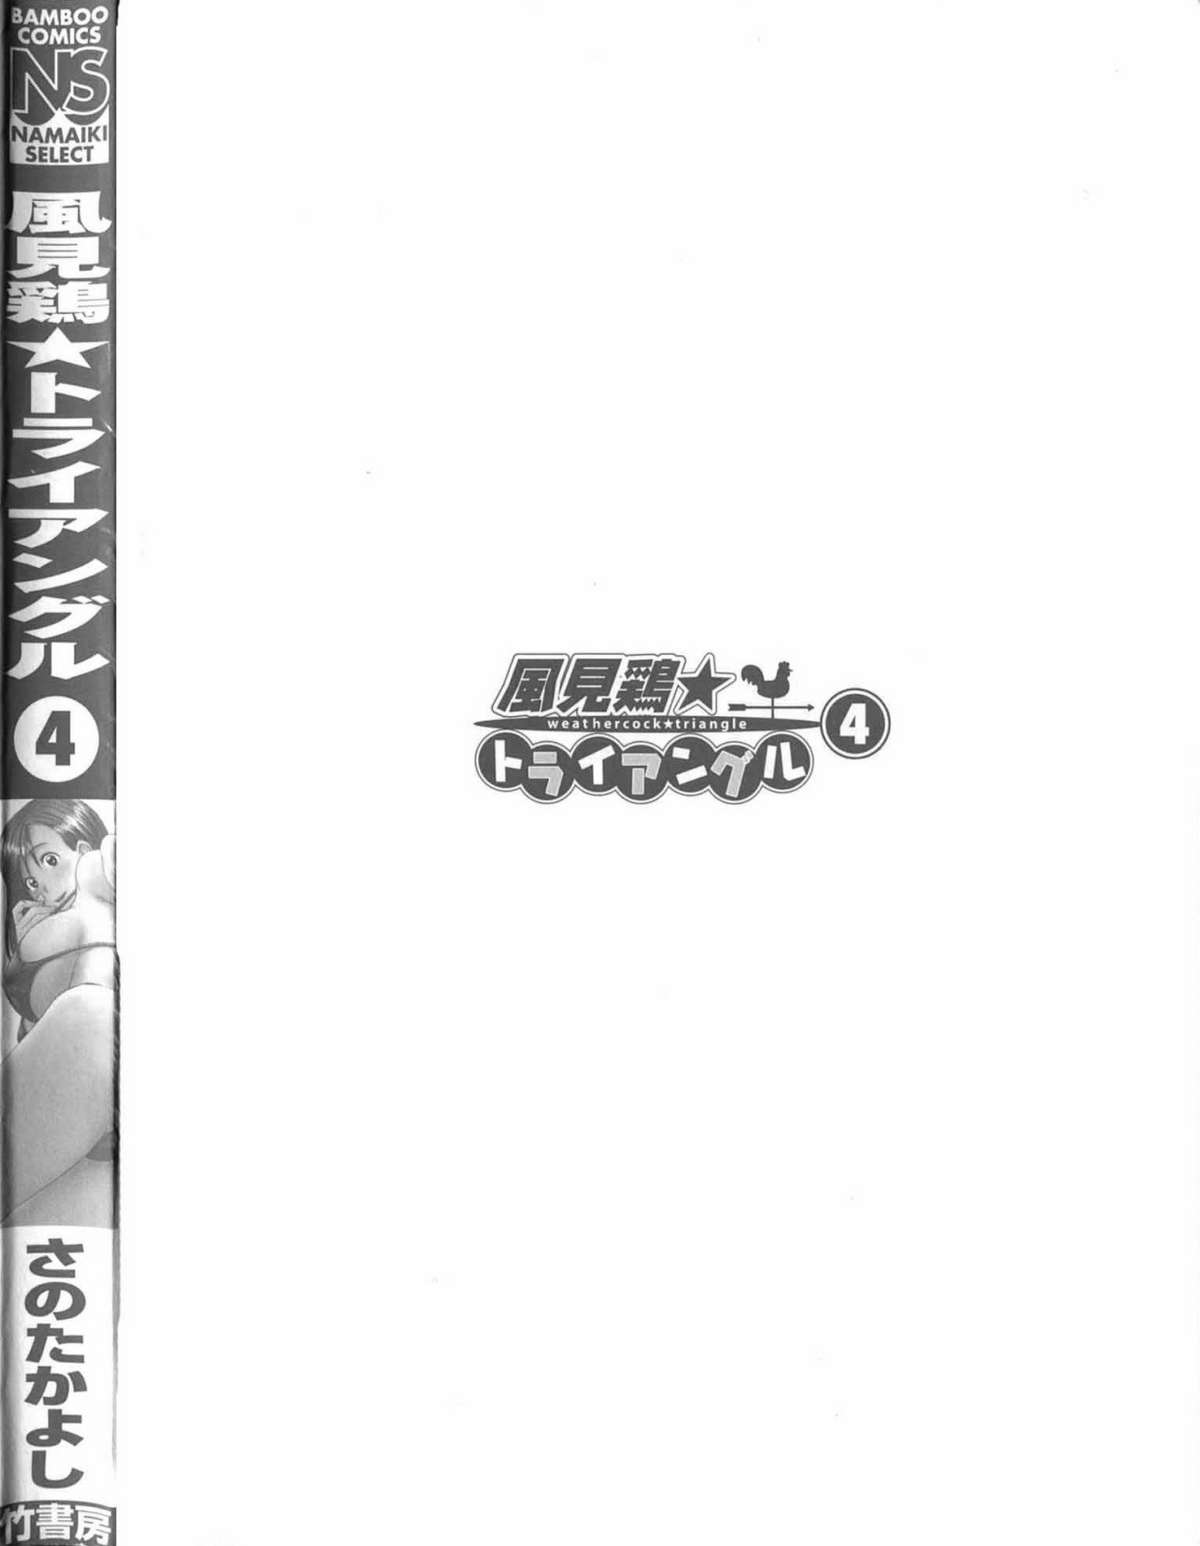 [Takayoshi Sano] Kazamidori Triangle Vol.4 